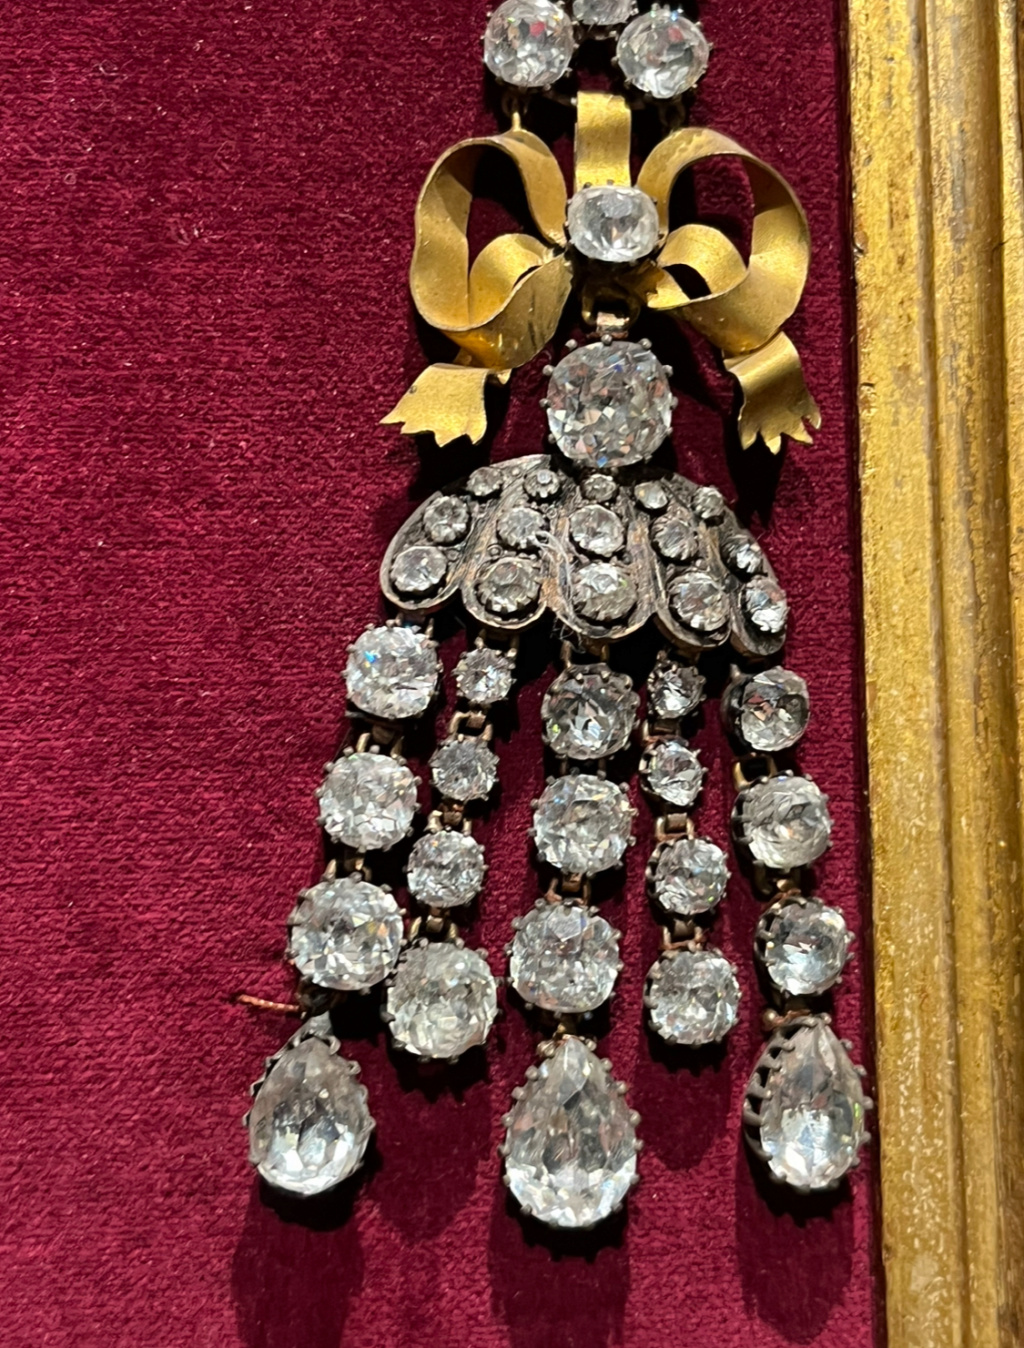 Le collier dit de la reine Marie-Antoinette (L'affaire du collier de la reine), et ses répliques - Page 2 Img_5414